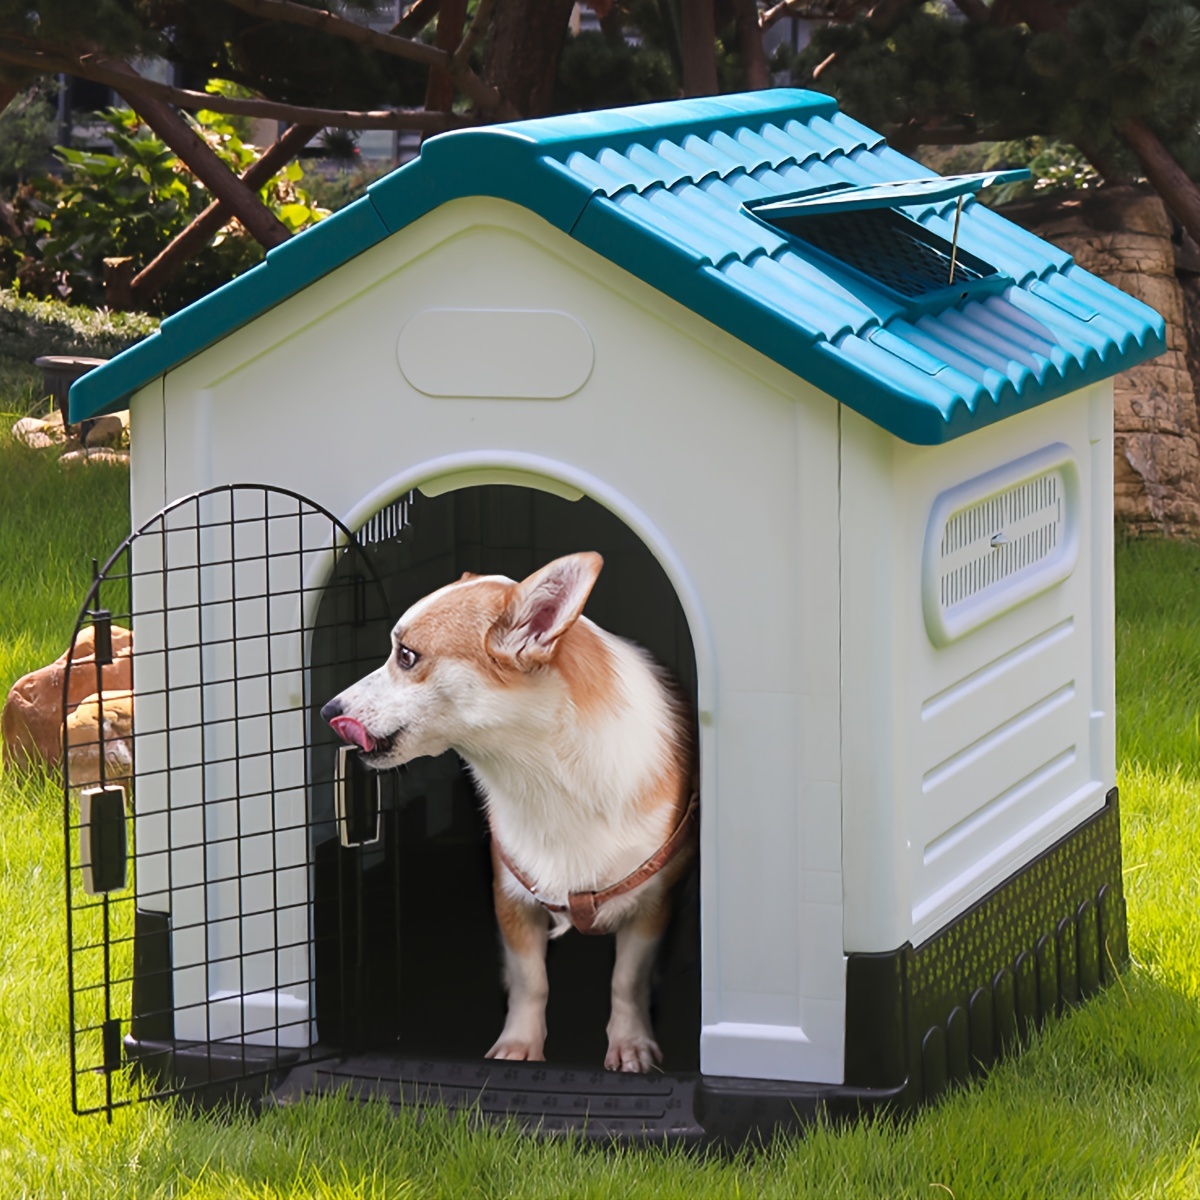 Jaula para perros, jaula plegable de metal para mascotas, para perros  pequeños, medianos y grandes, puertas dobles de 36 pulgadas, perrera con  panel